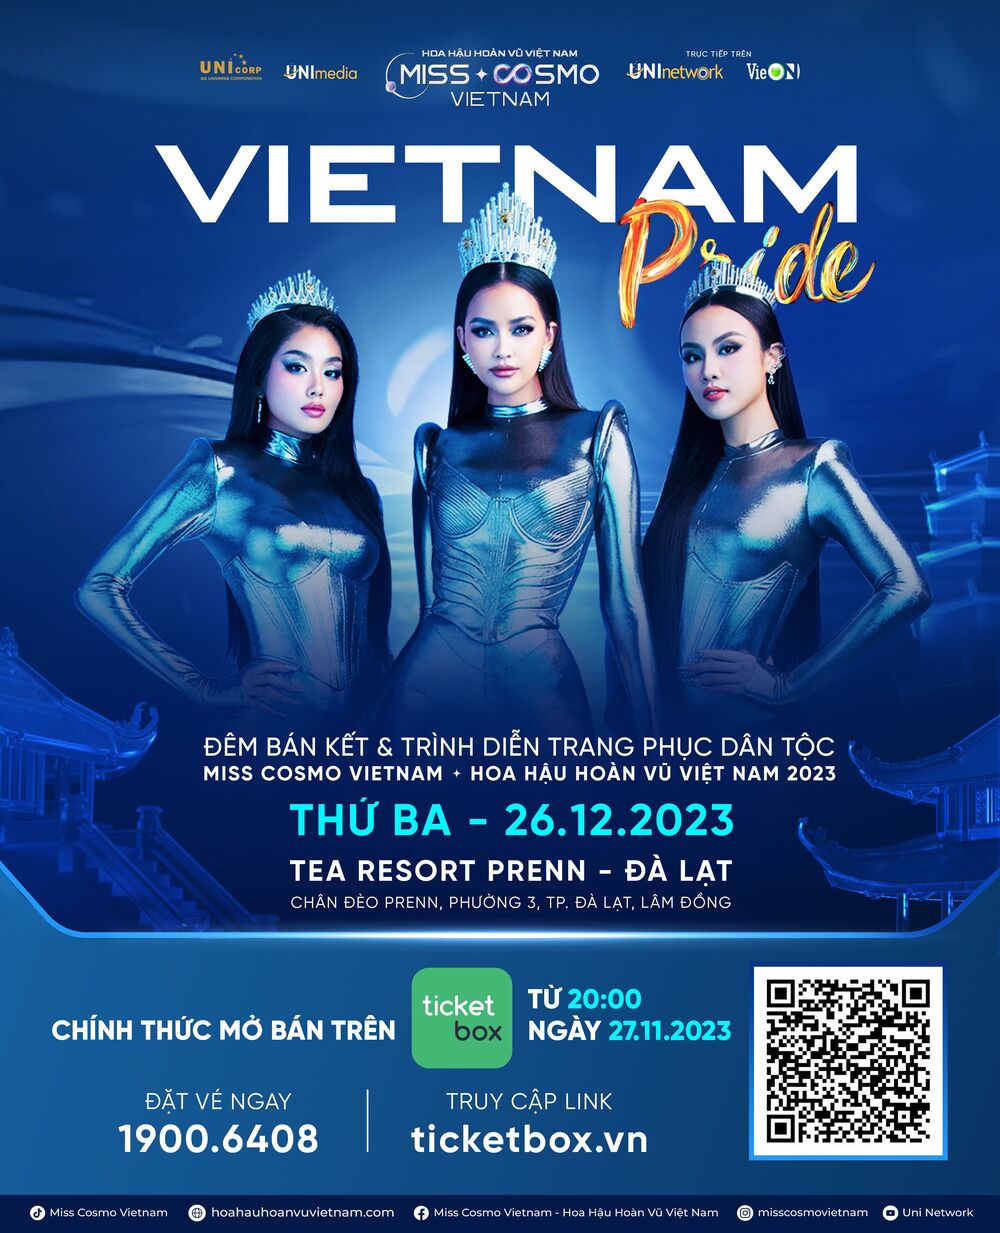 Mở bán vé đêm bán kết Hoa hậu Hoàn vũ Việt Nam 2023: Giá cao nhất 3 triệu đồng - 1